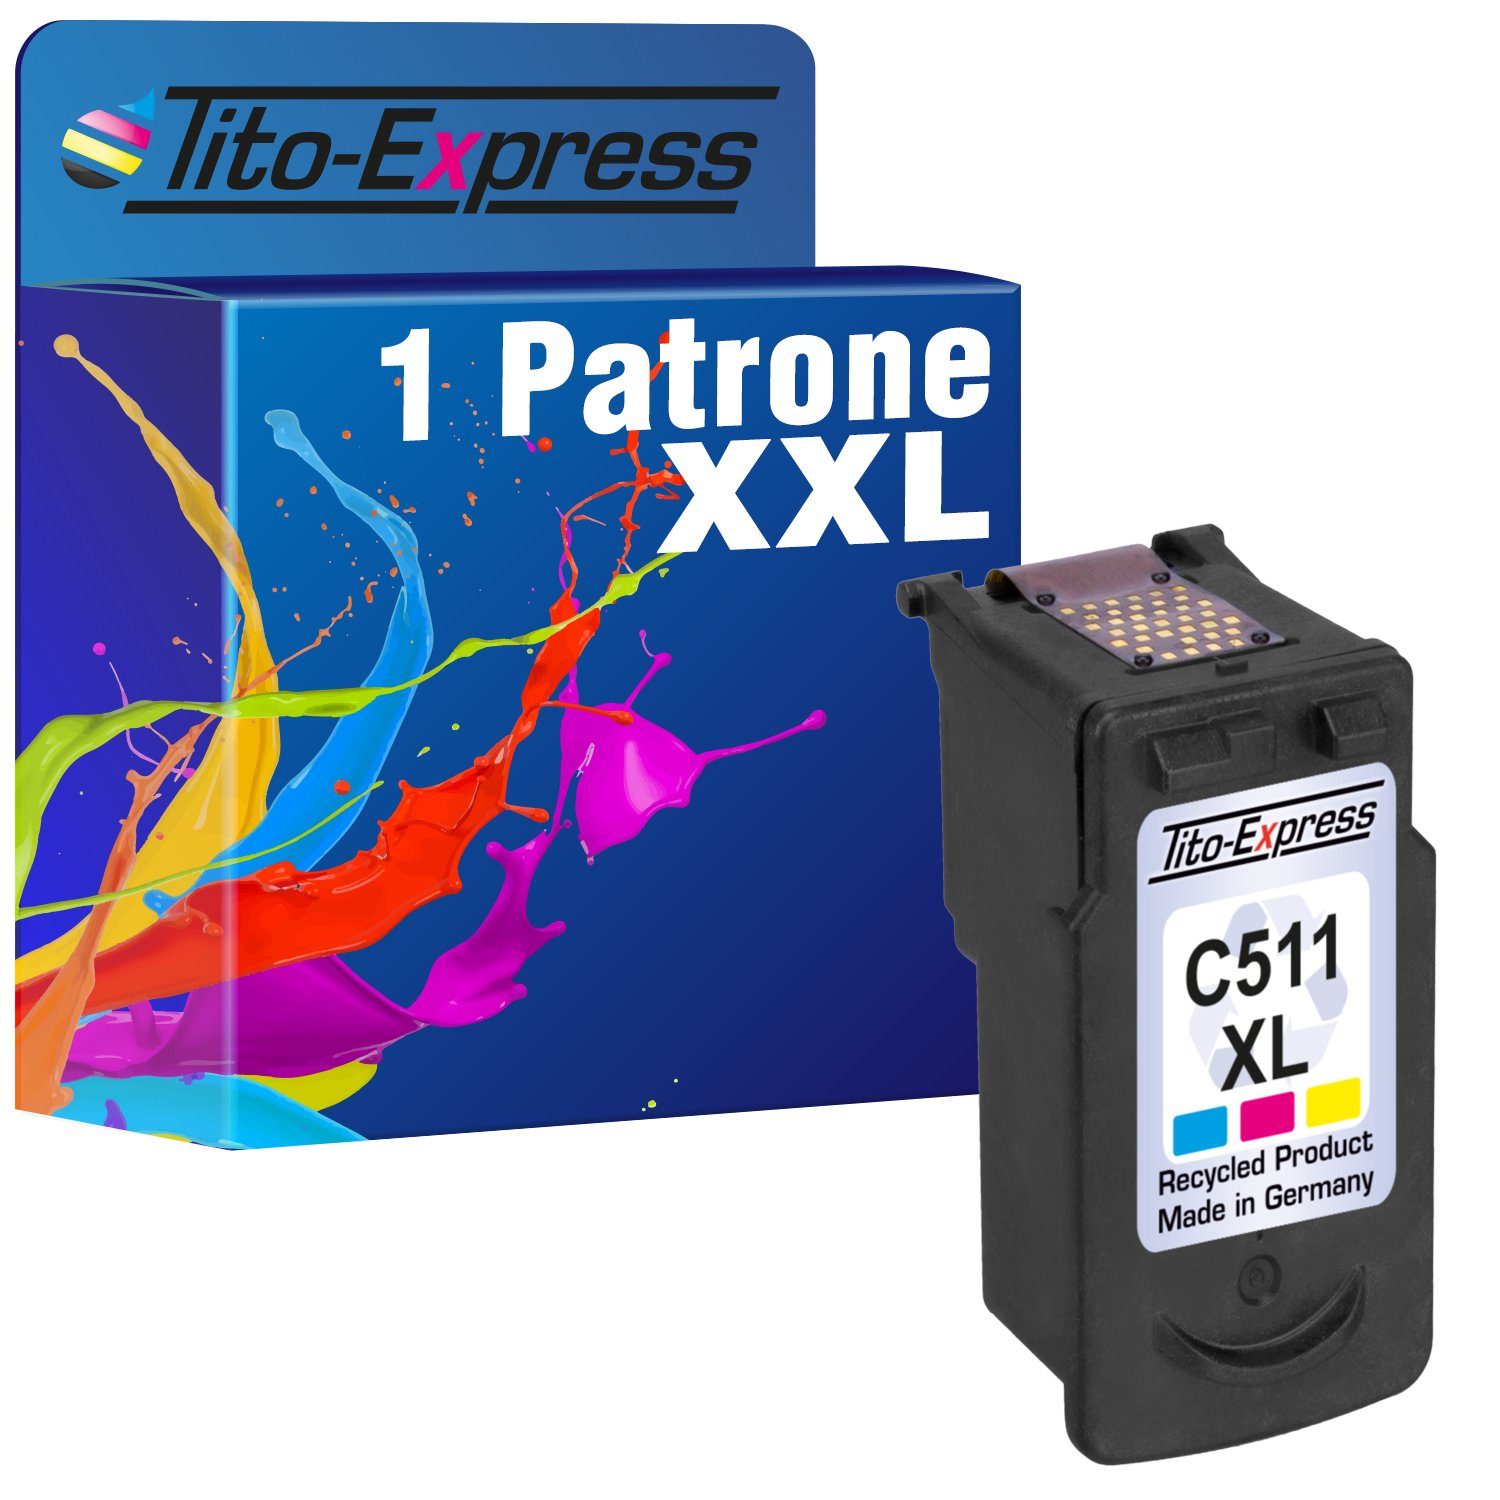 Color Canon CL511 CL Canon XL Tito-Express Tintenpatrone CL-511 ersetzt PG-510 511